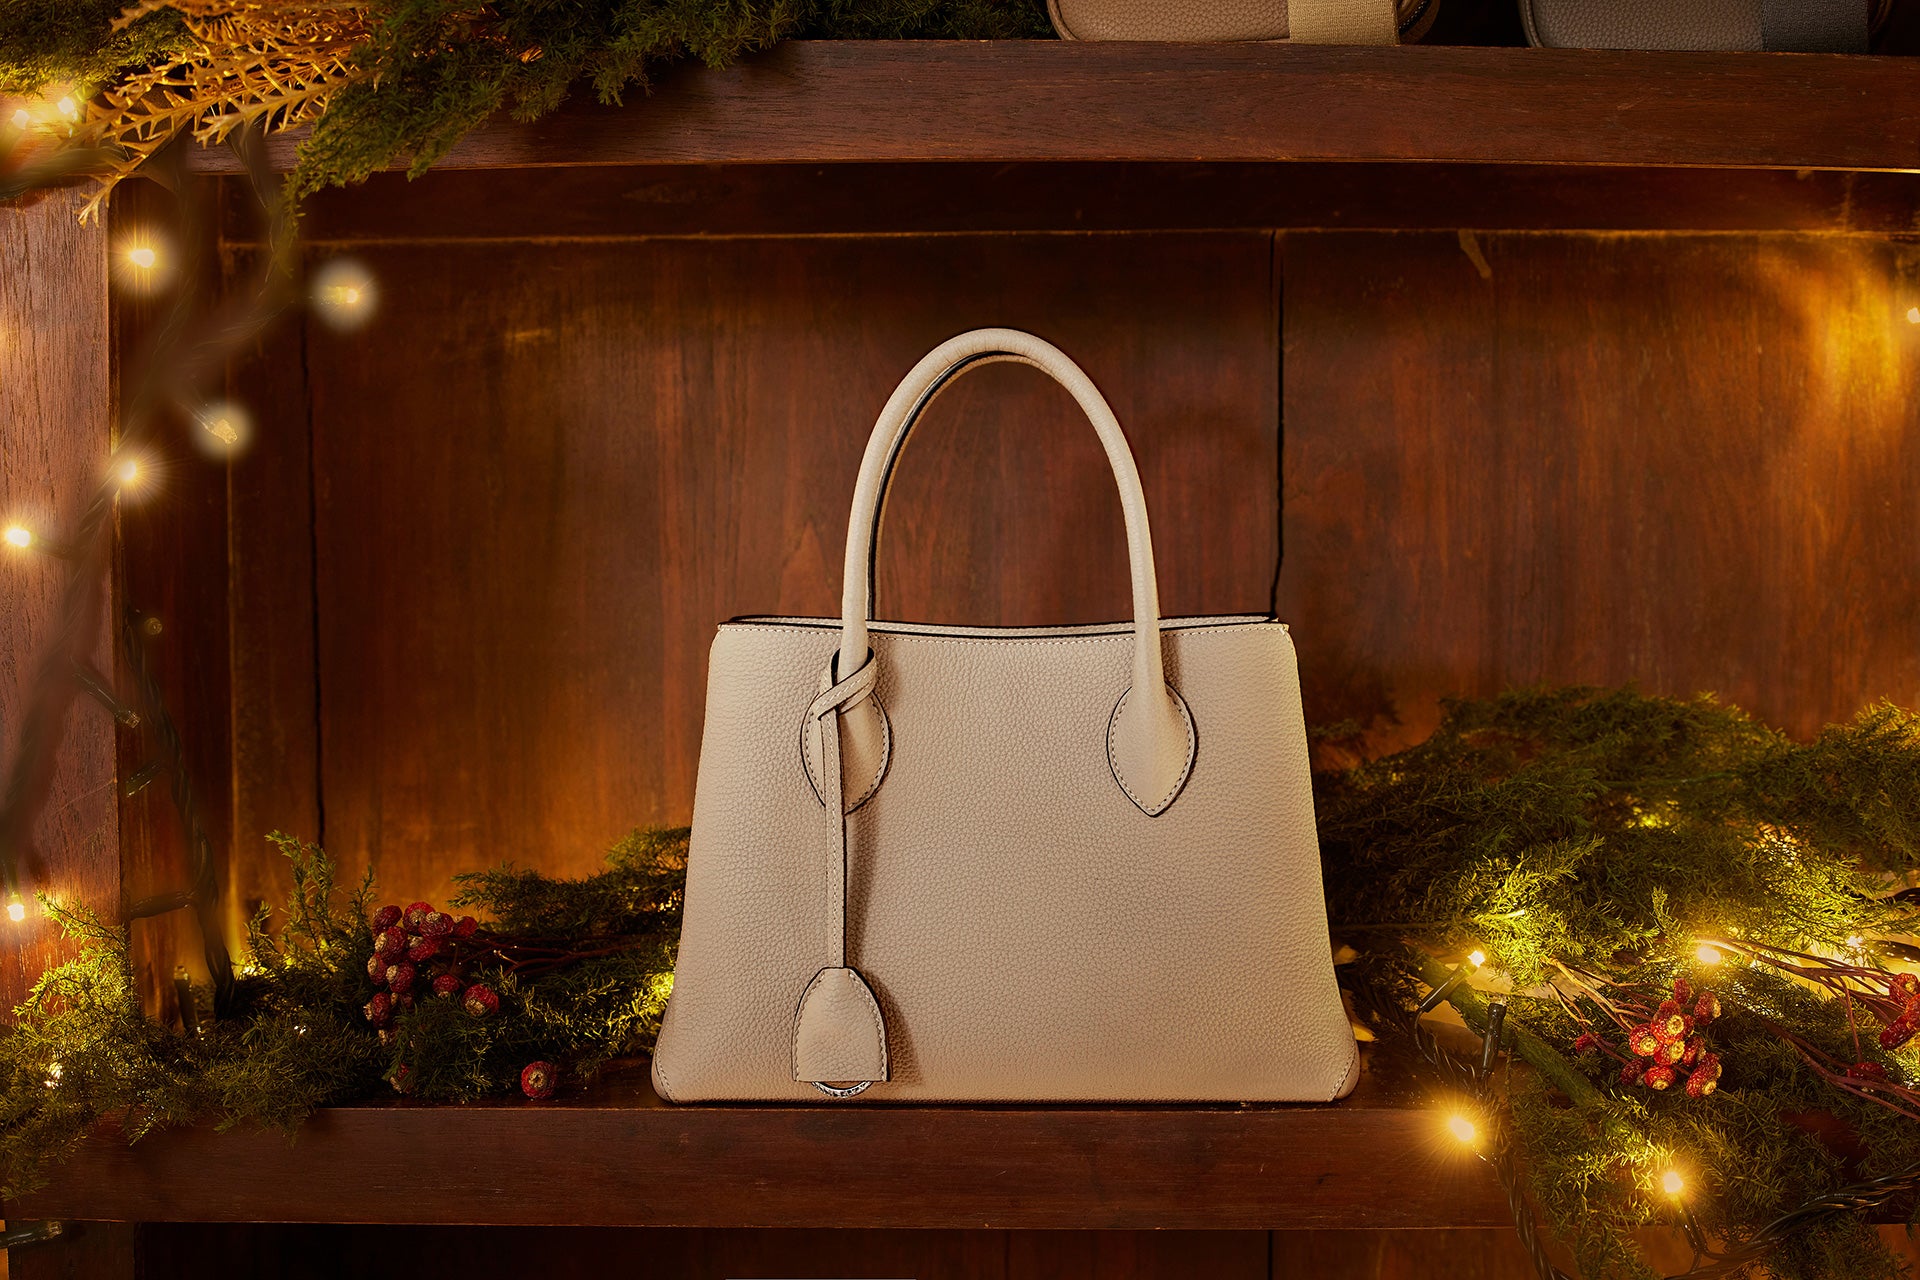 Tyylikäs BONAVENTURA-käsilaukku juhlallisesti koristellulla joulupöydällä.